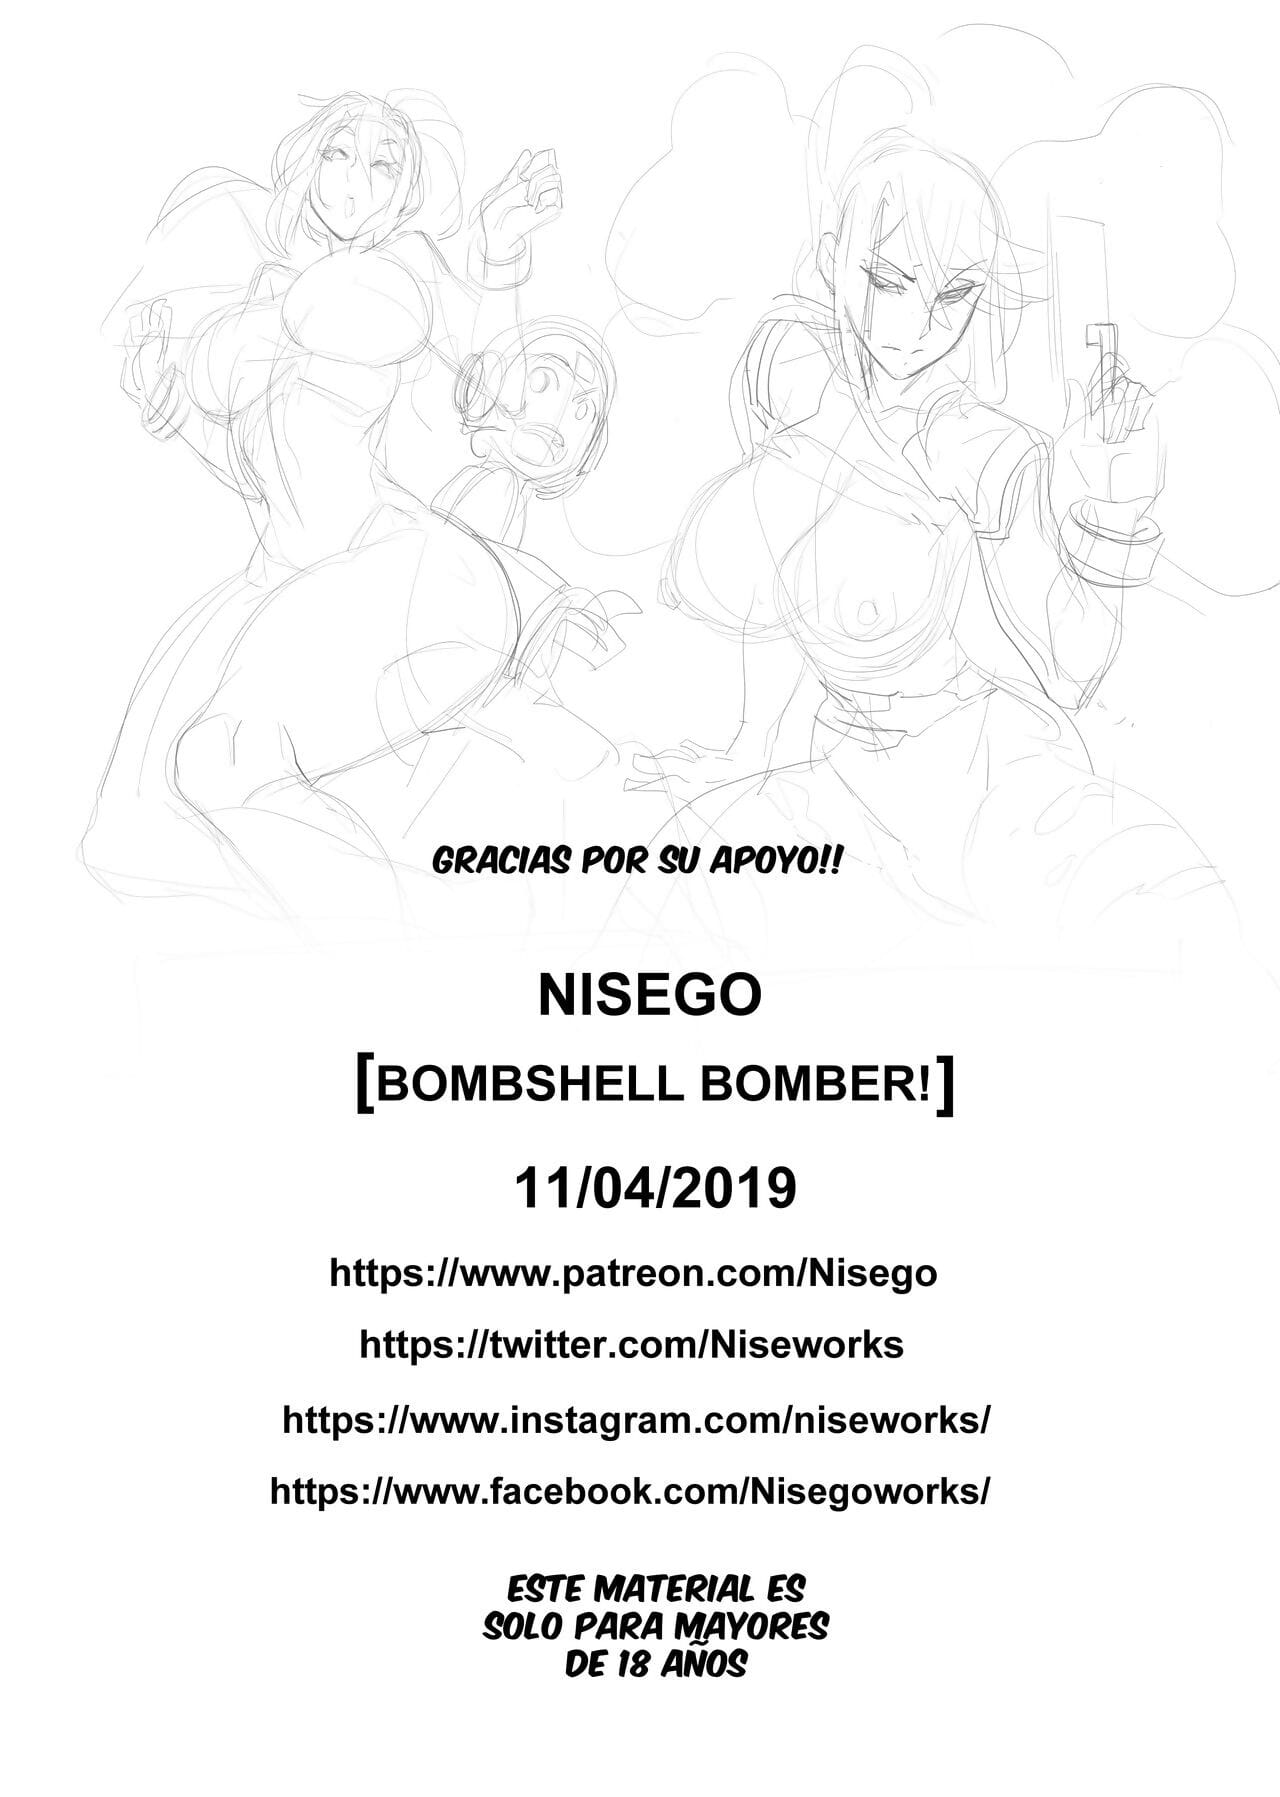 Bombshell Bomber - part 2